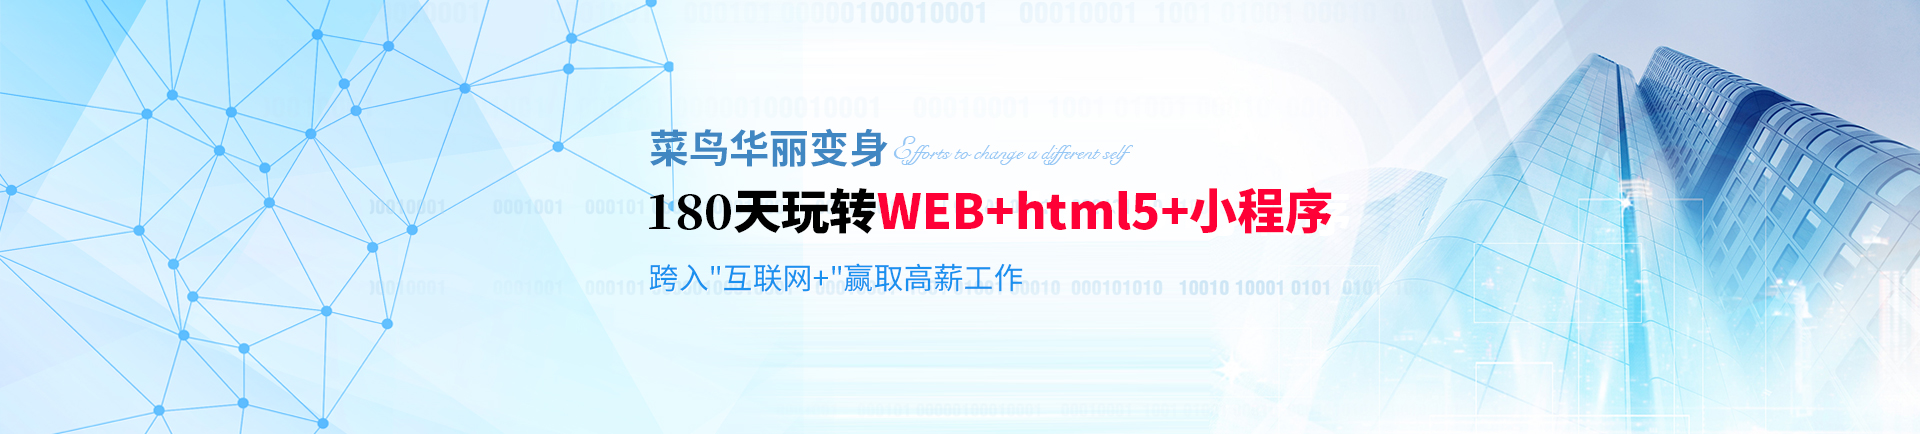 180天玩转WEB+html5+小程序 跨入互联网+赢取高薪-haerbin